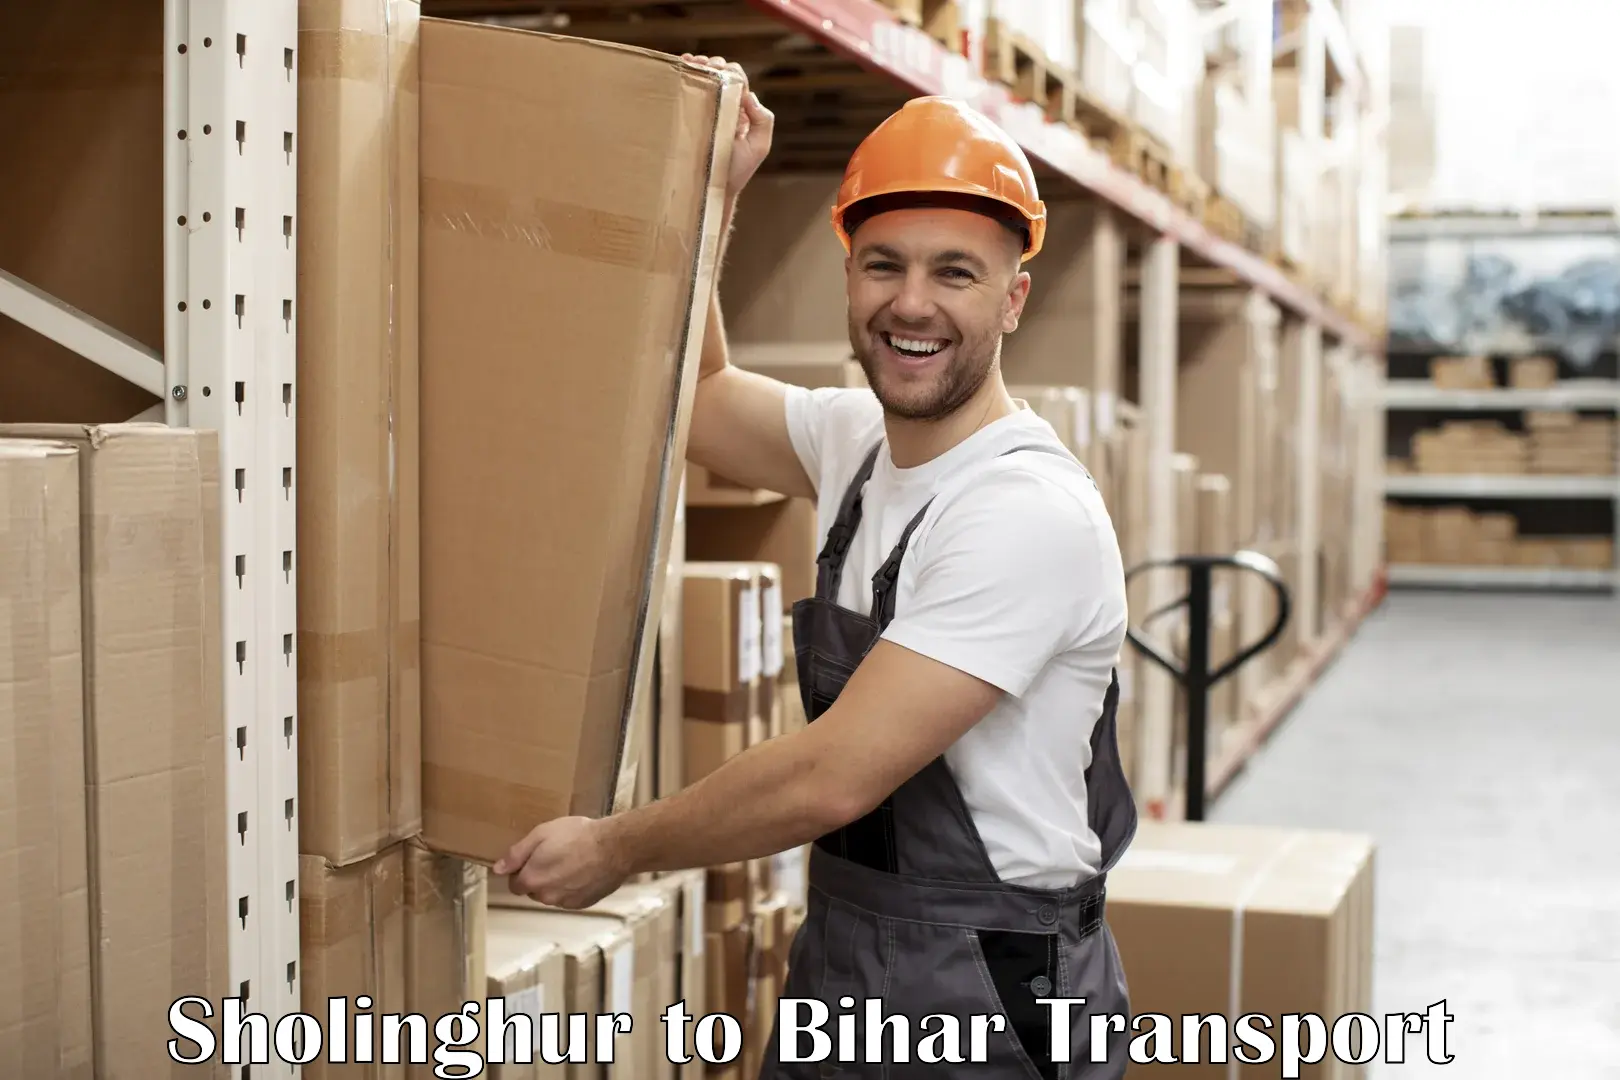 Road transport online services Sholinghur to Bihar